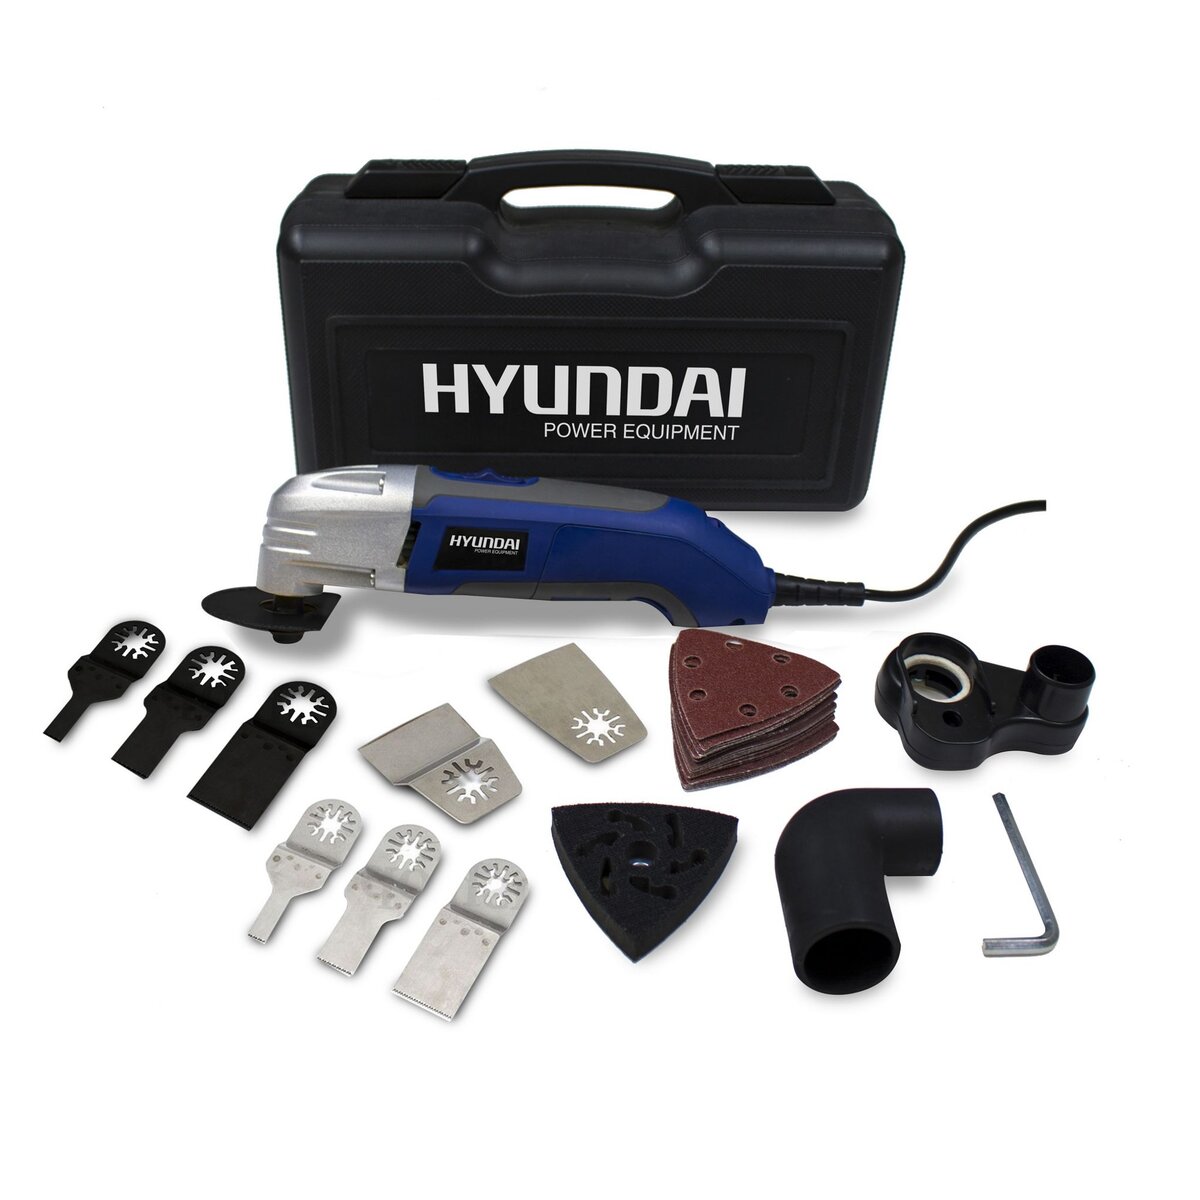 HYUNDAI Coffret outil multifonction 300W et 60 accessoires